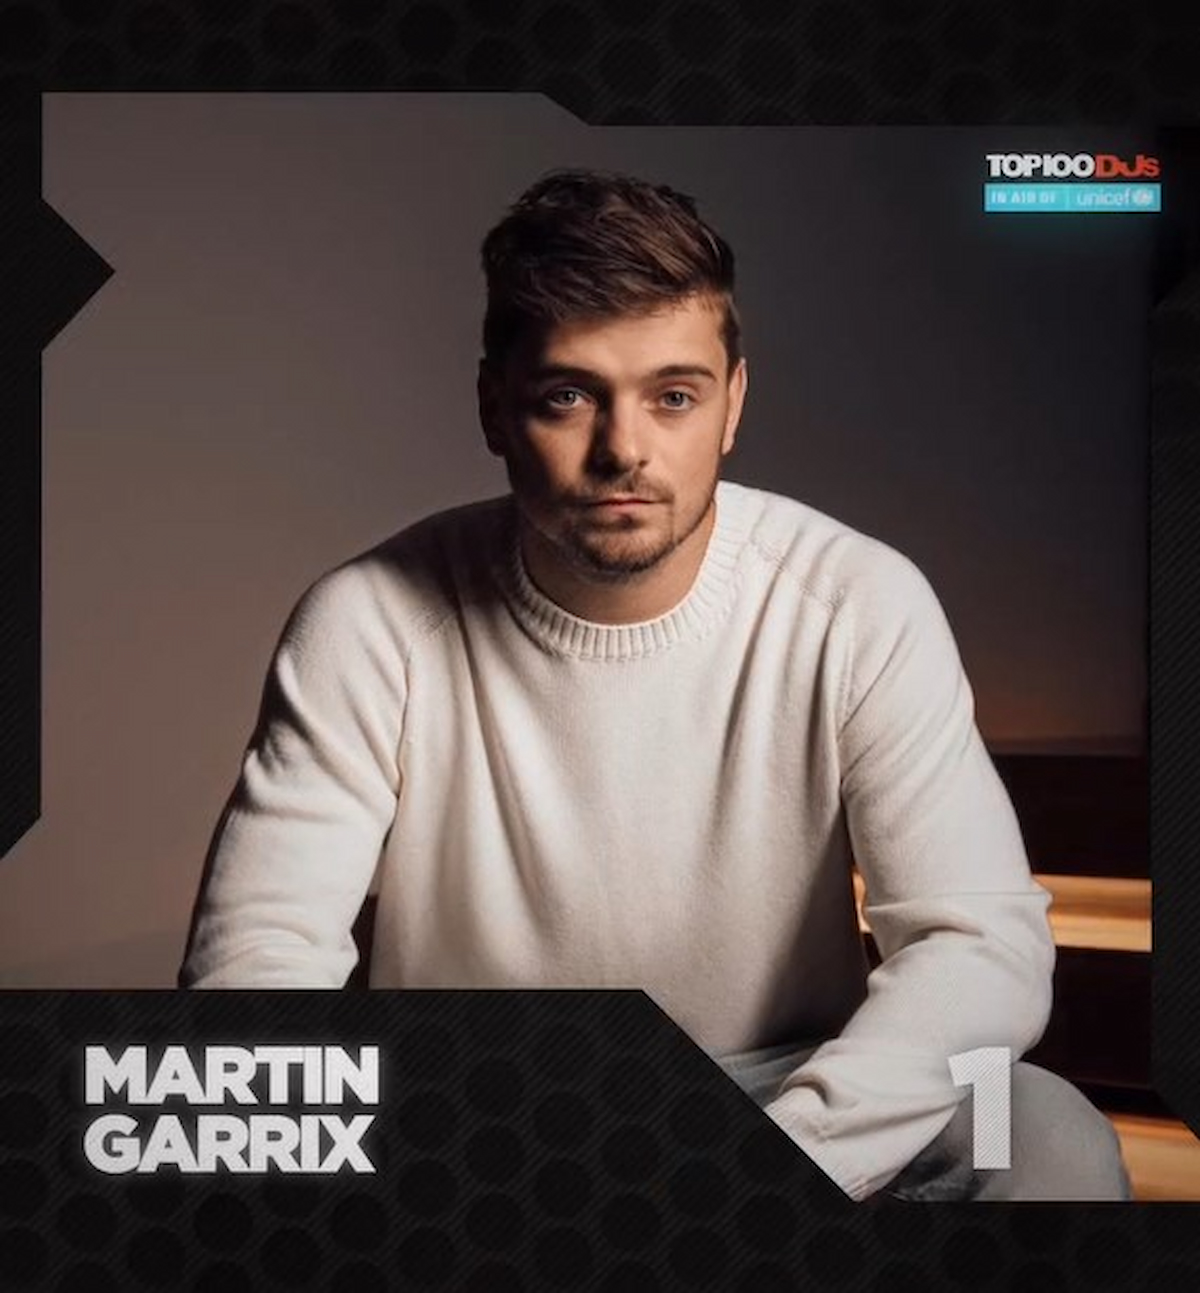 Martin Garrix é o #1 da DJ Mag Top 100 DJs de 2022 que conta com 4 brasileiros no ranking